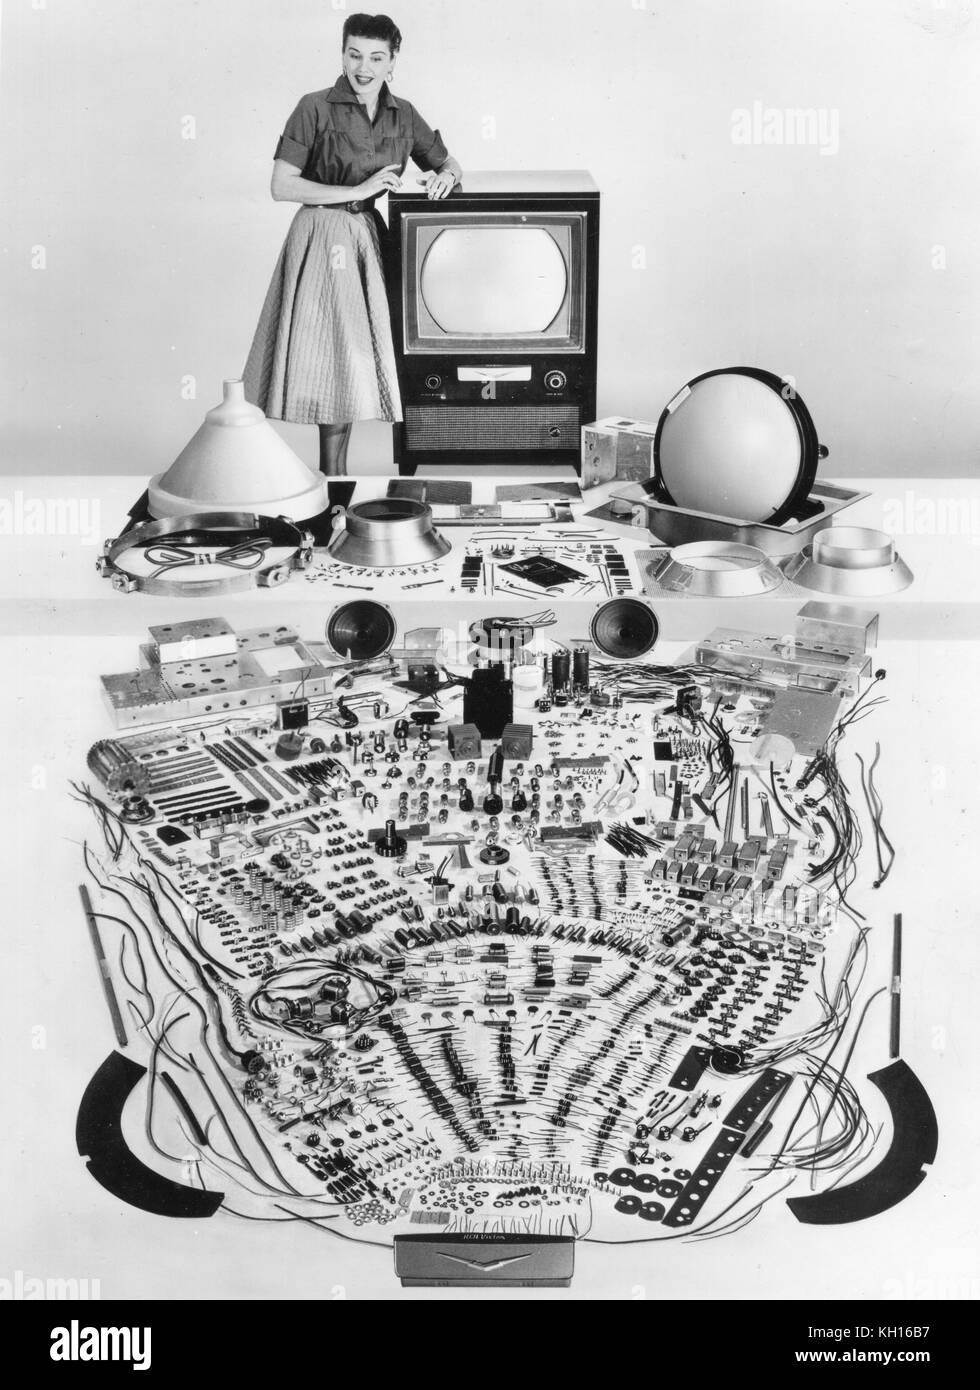 Un modèle pose avec plus de 2 000 parties distinctes qui composent une télévision couleurs, Bloomington, IN, 1959. Banque D'Images